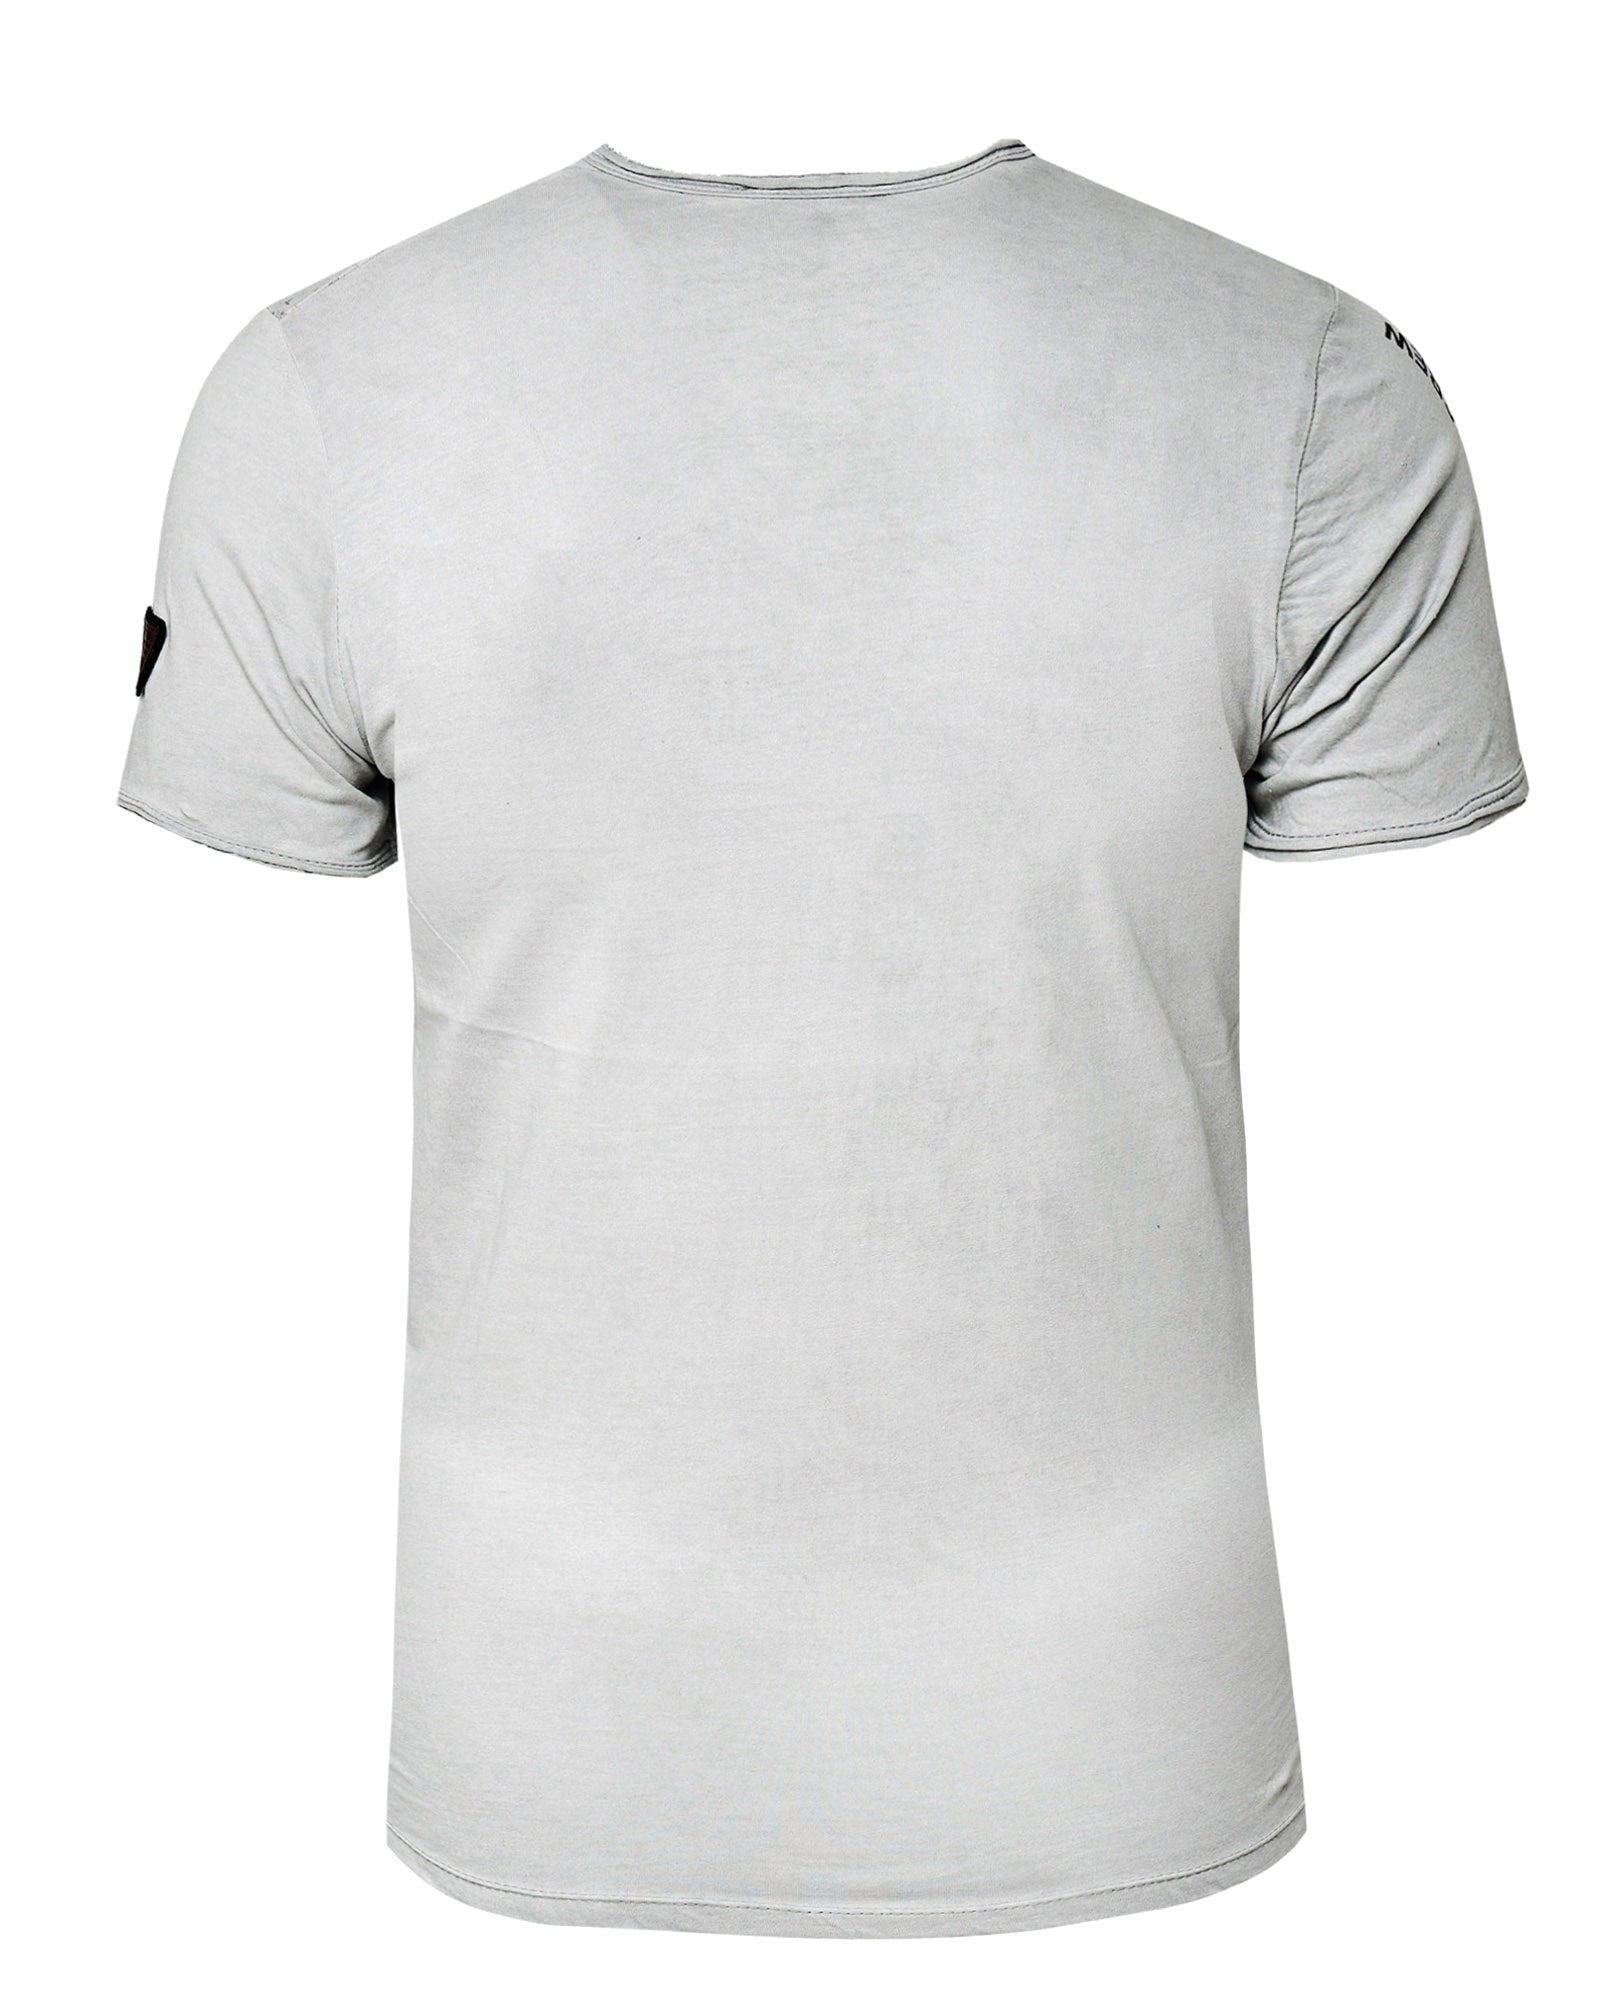 Stwrring crew t-shirt - Grey